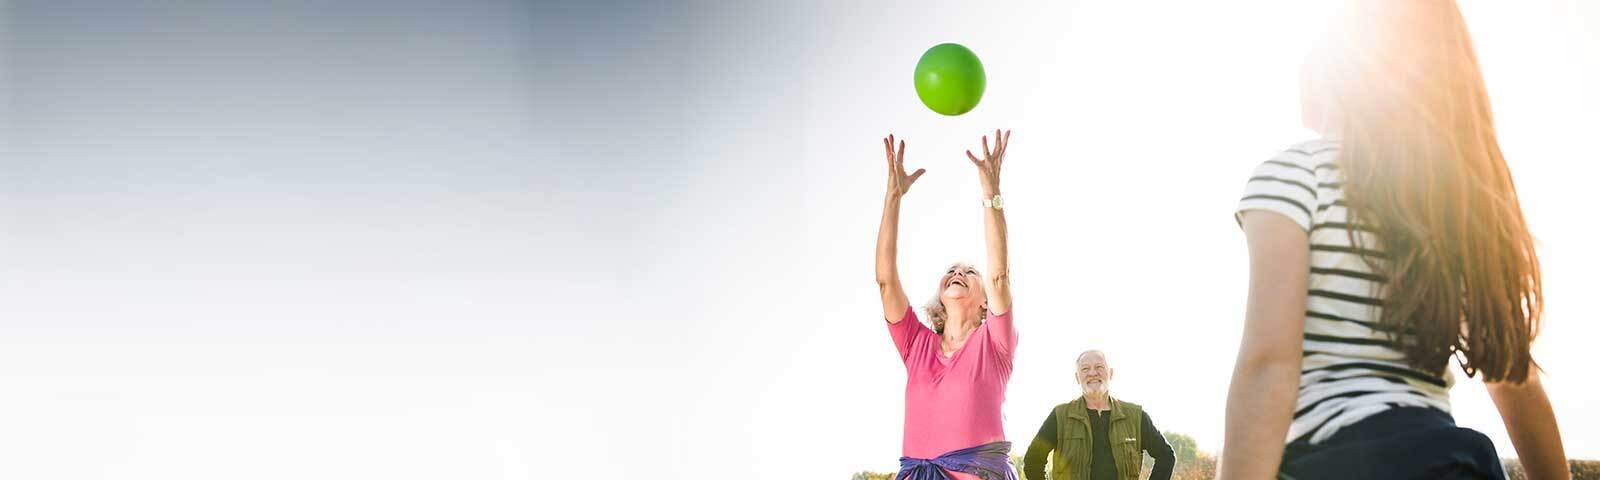 Ältere Dame wirft Ball hoch: Gleichgewicht und Schwindel